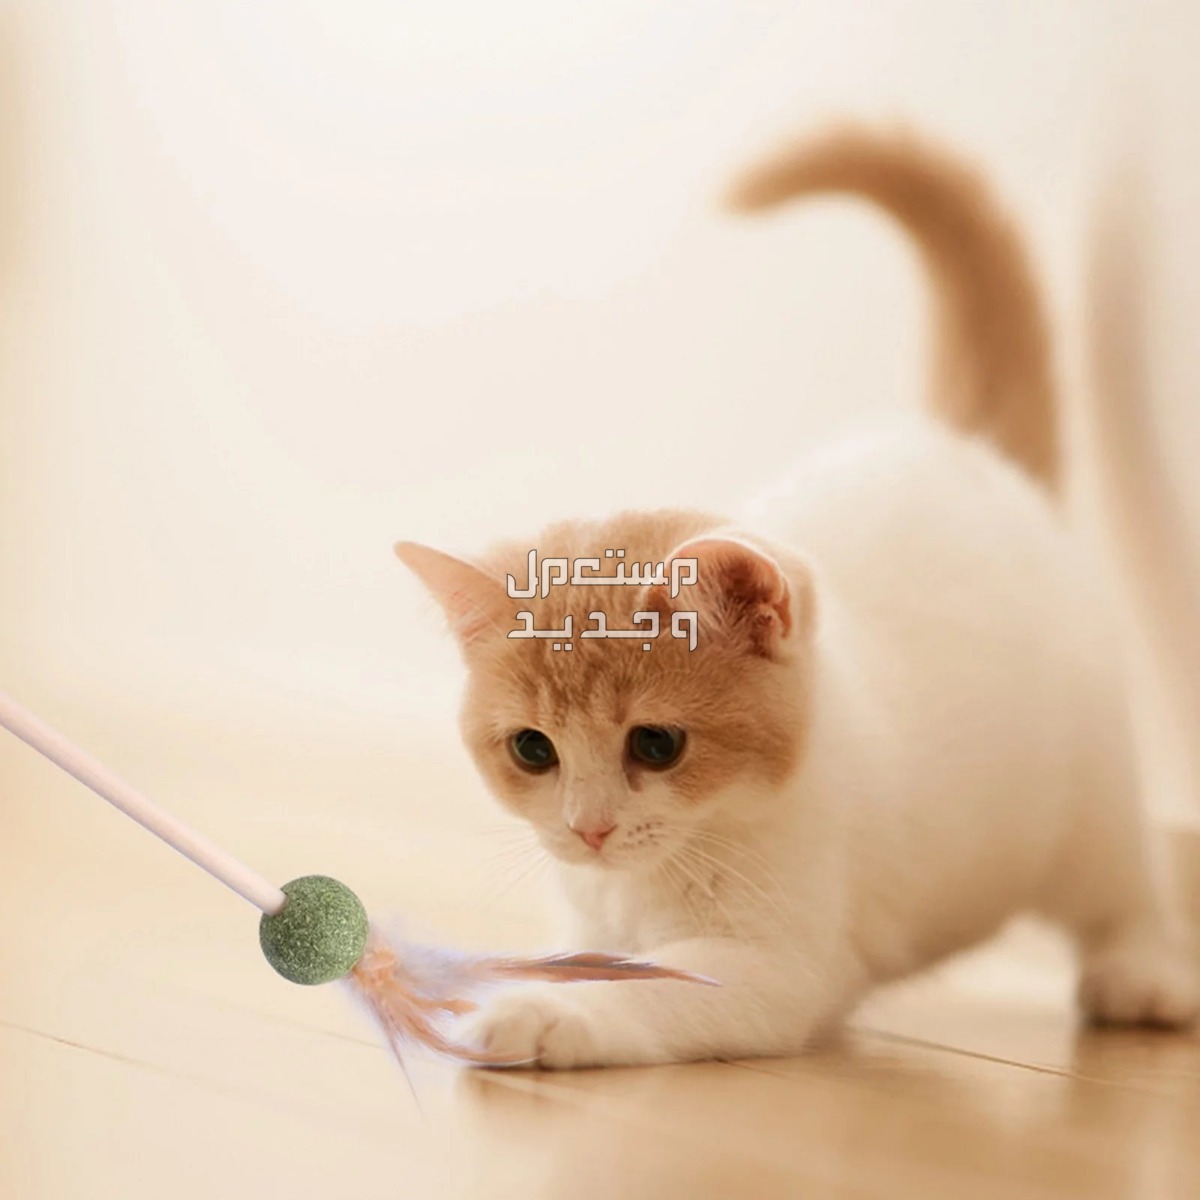 لمحبي القطط - تعرف على أفضل العاب قطط متحركة في ليبيا قطة تلعب بالريشة